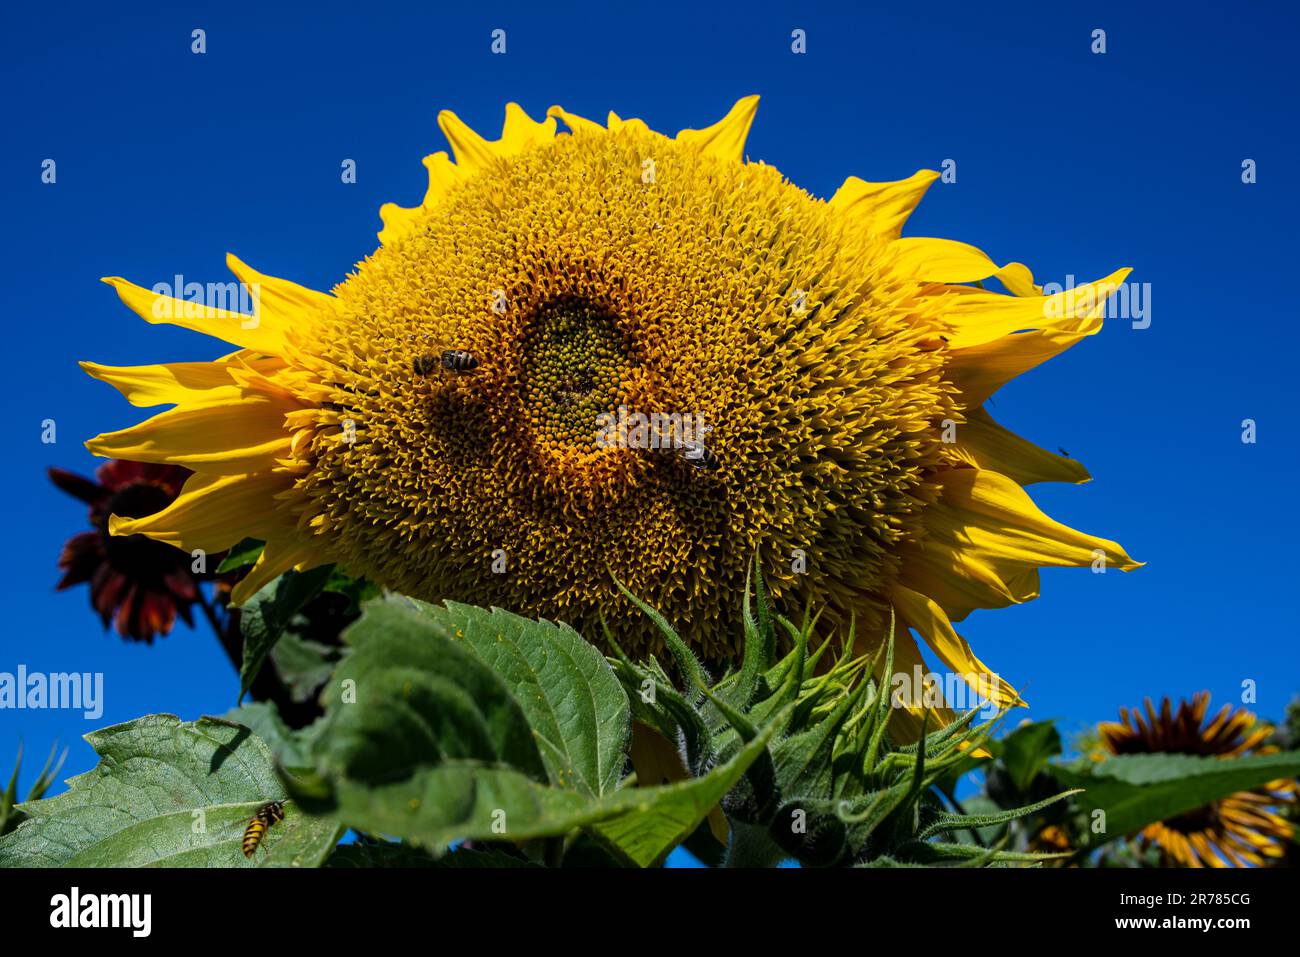 Sonnenblume (Helianthus annuus) mit einer Biene auf ihr vor blauem Himmel. Stockfoto